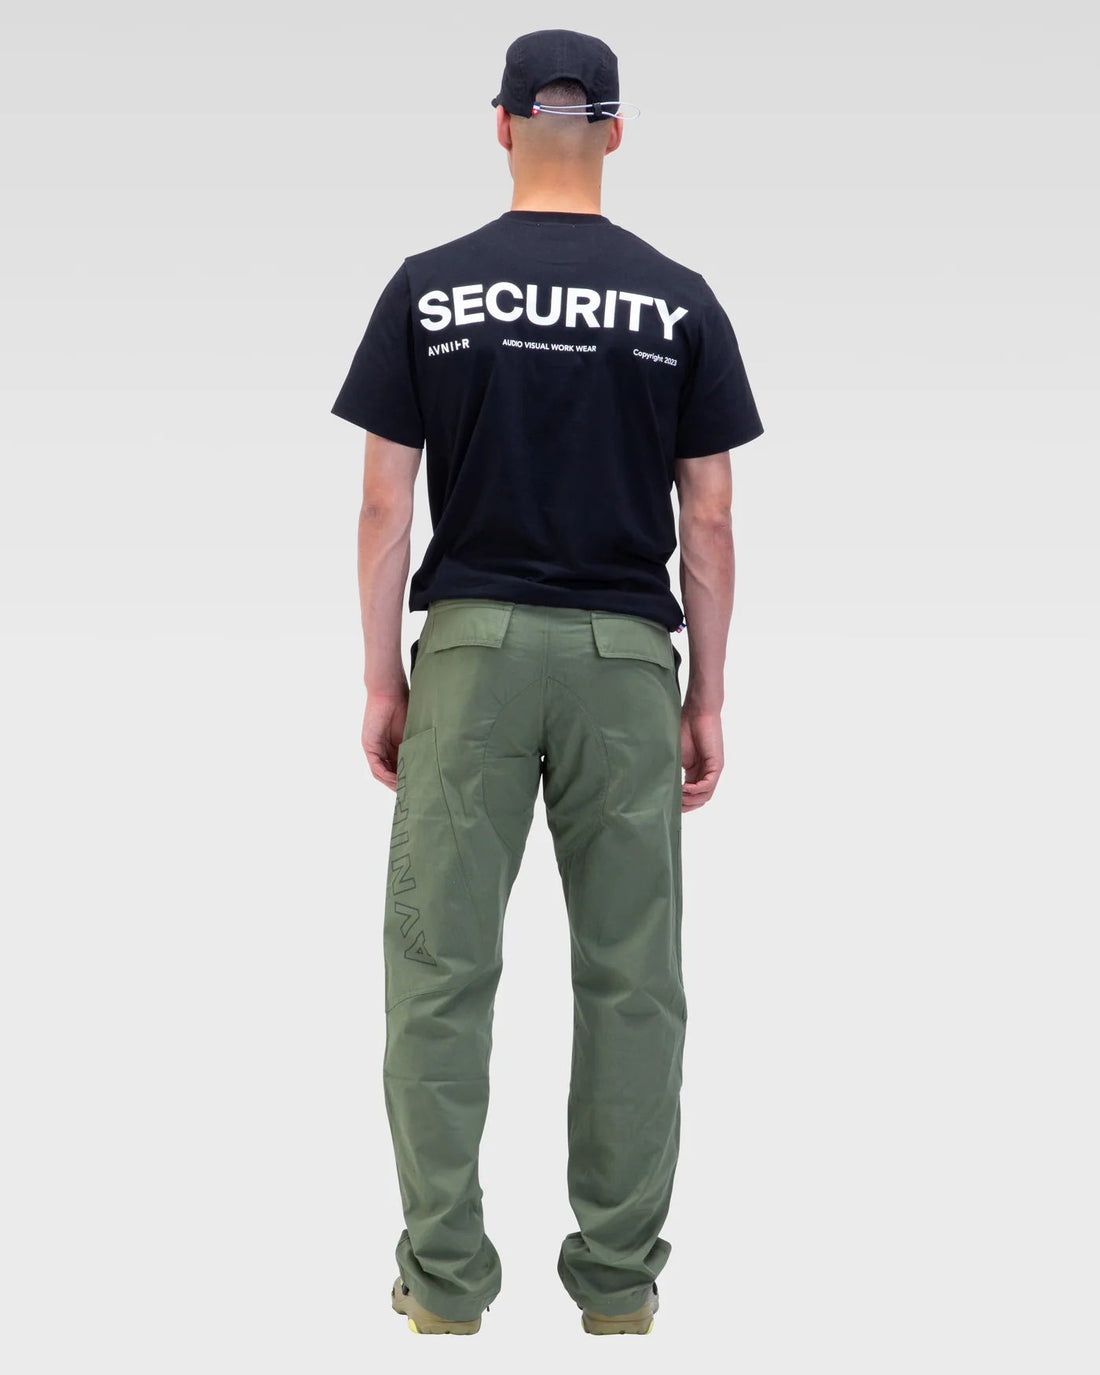 AVNIER • T-shirt Source Black Security Hauts 